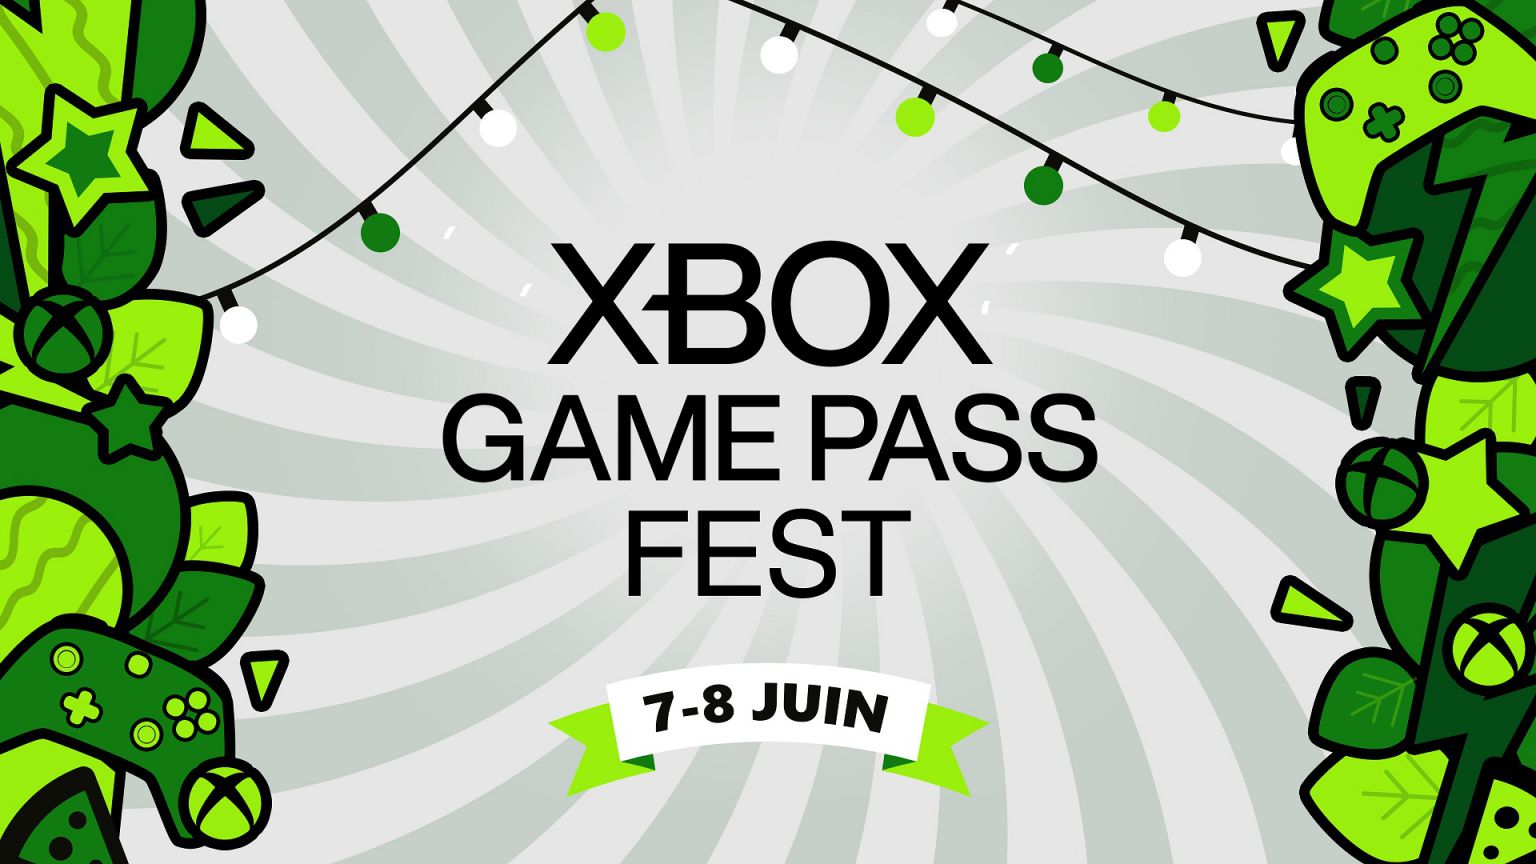 Xbox Game Pass Francia desvela su propio evento sobre el servicio que se celebrará la próxima semana, a unos días del E3 2021.